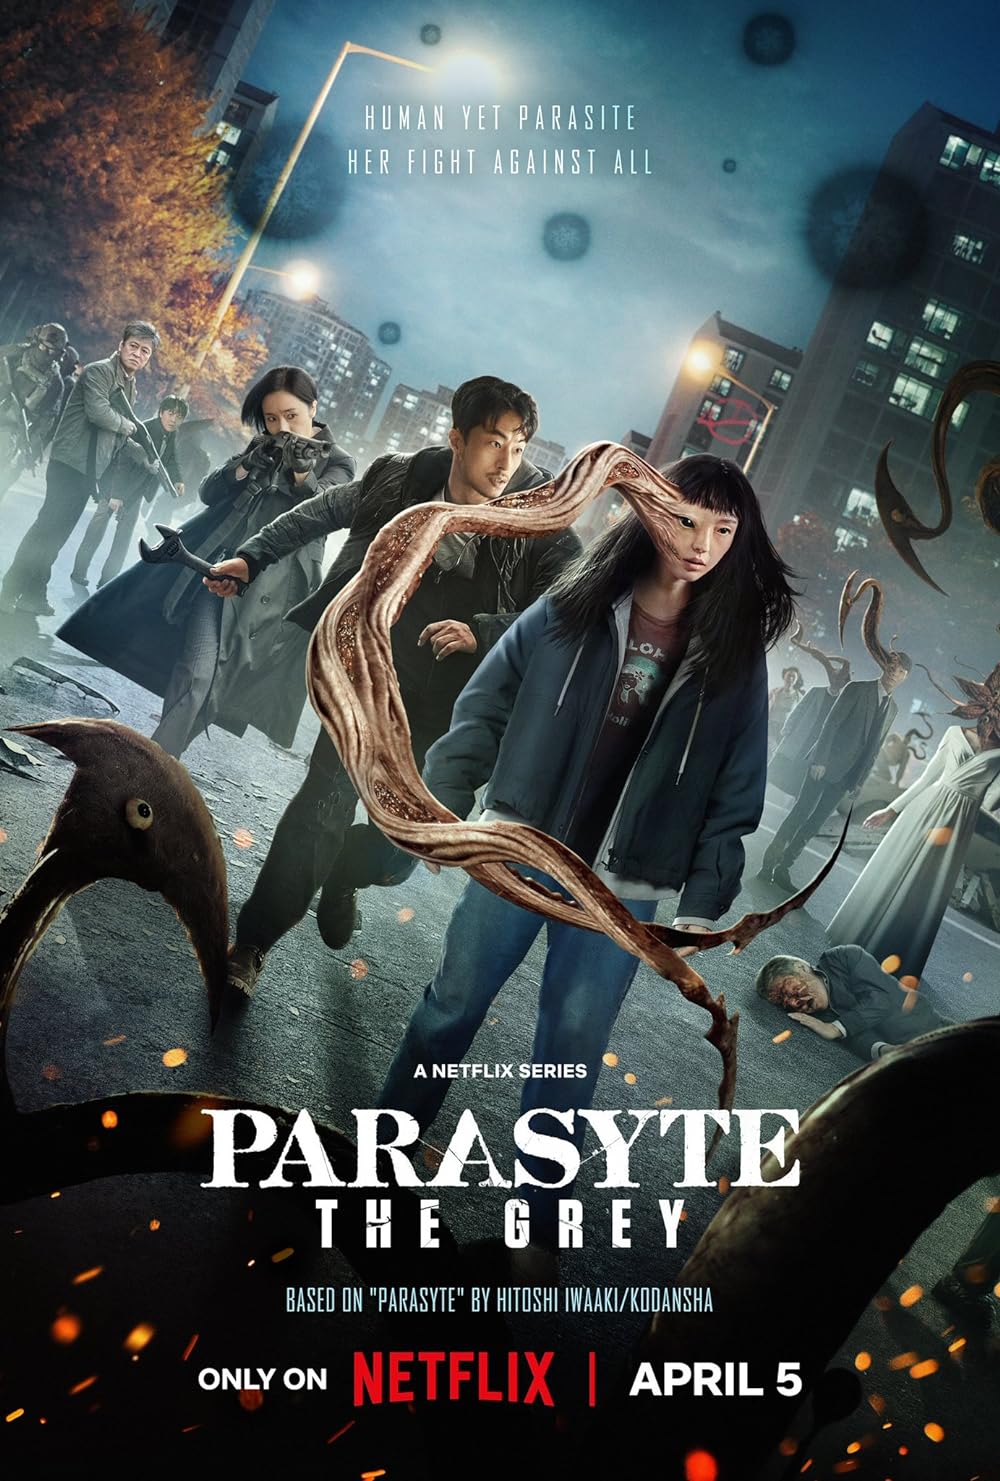 Parasyte: The Grey (ปรสิต: เดอะ เกรย์) ซีรีส์ไซไฟทริลเลอร์ของเกาหลีใต้